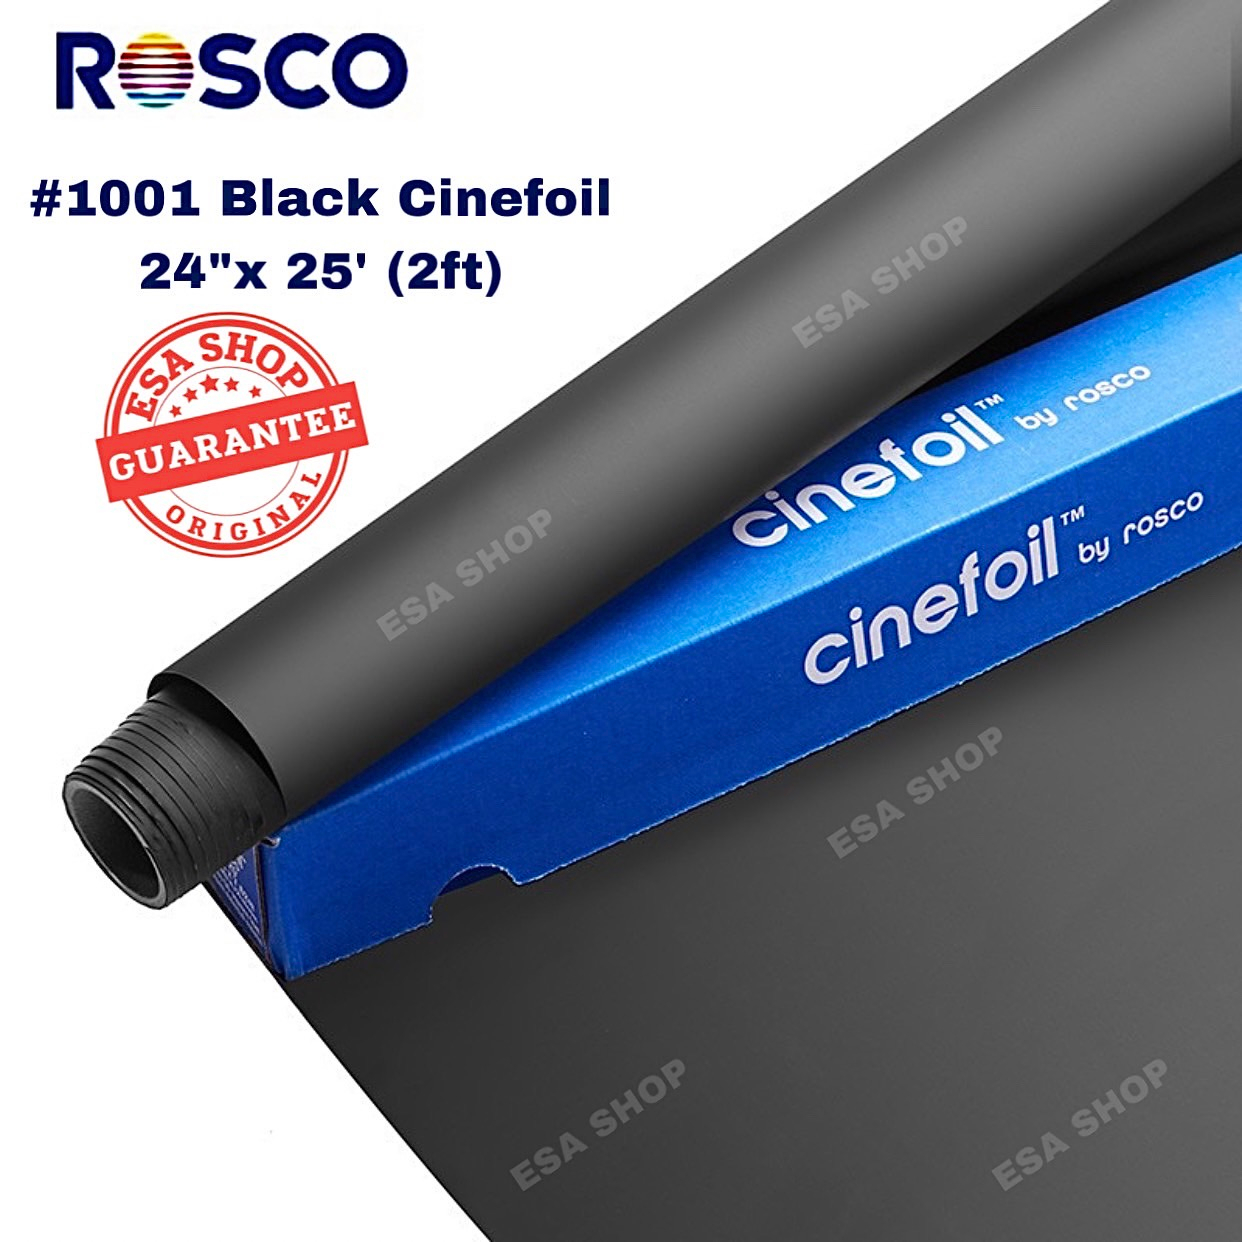 rosco-1001-black-cinefoil-1-roll